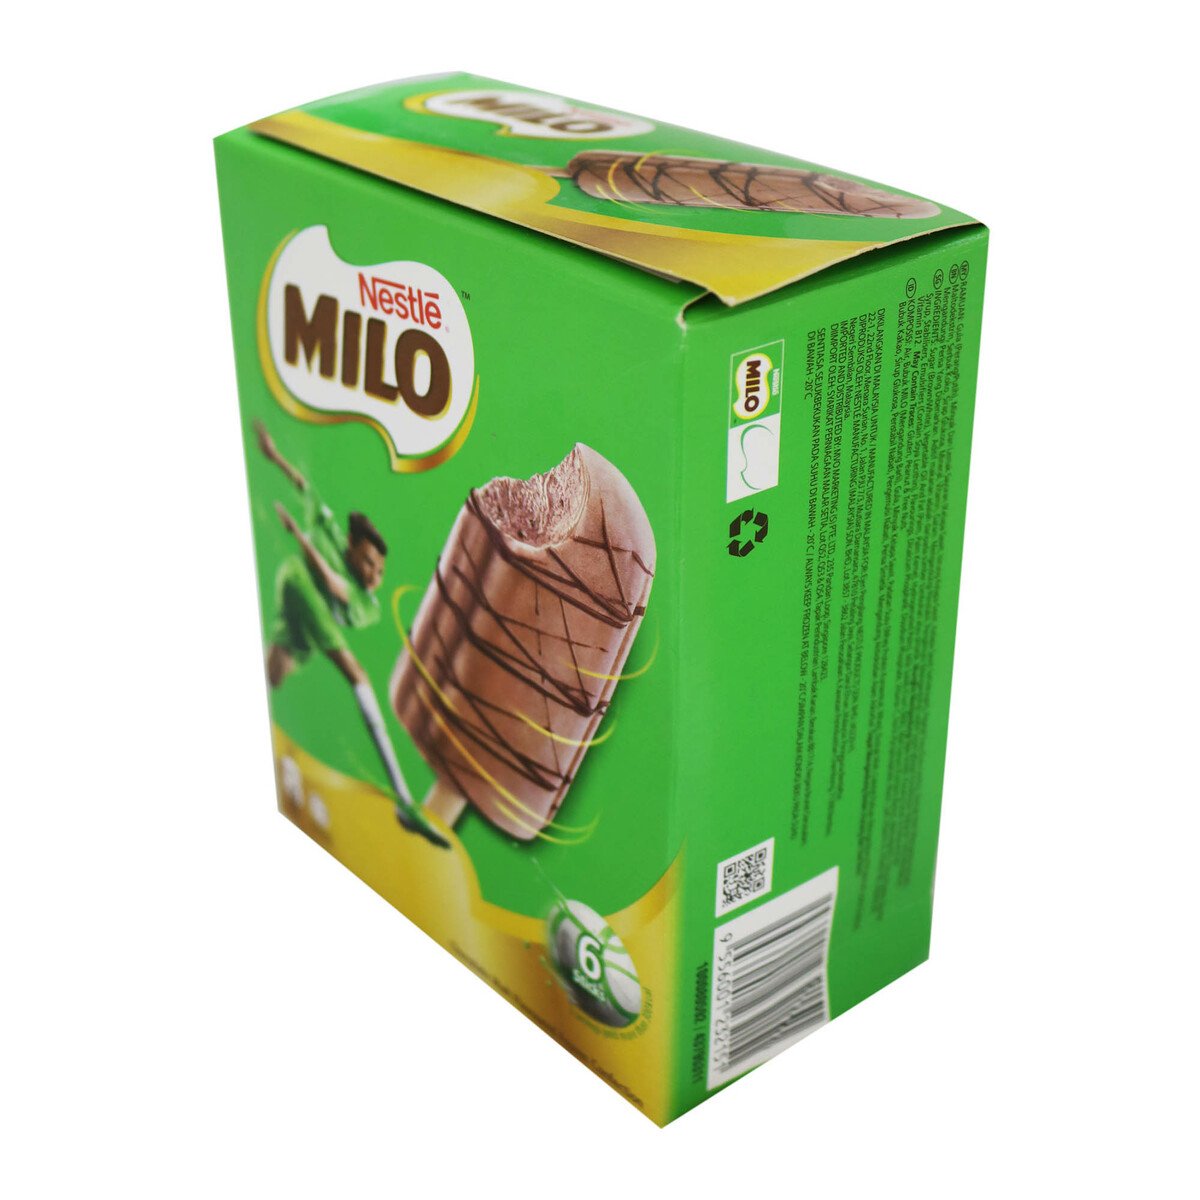 Nestle Milo 6 X 60ml